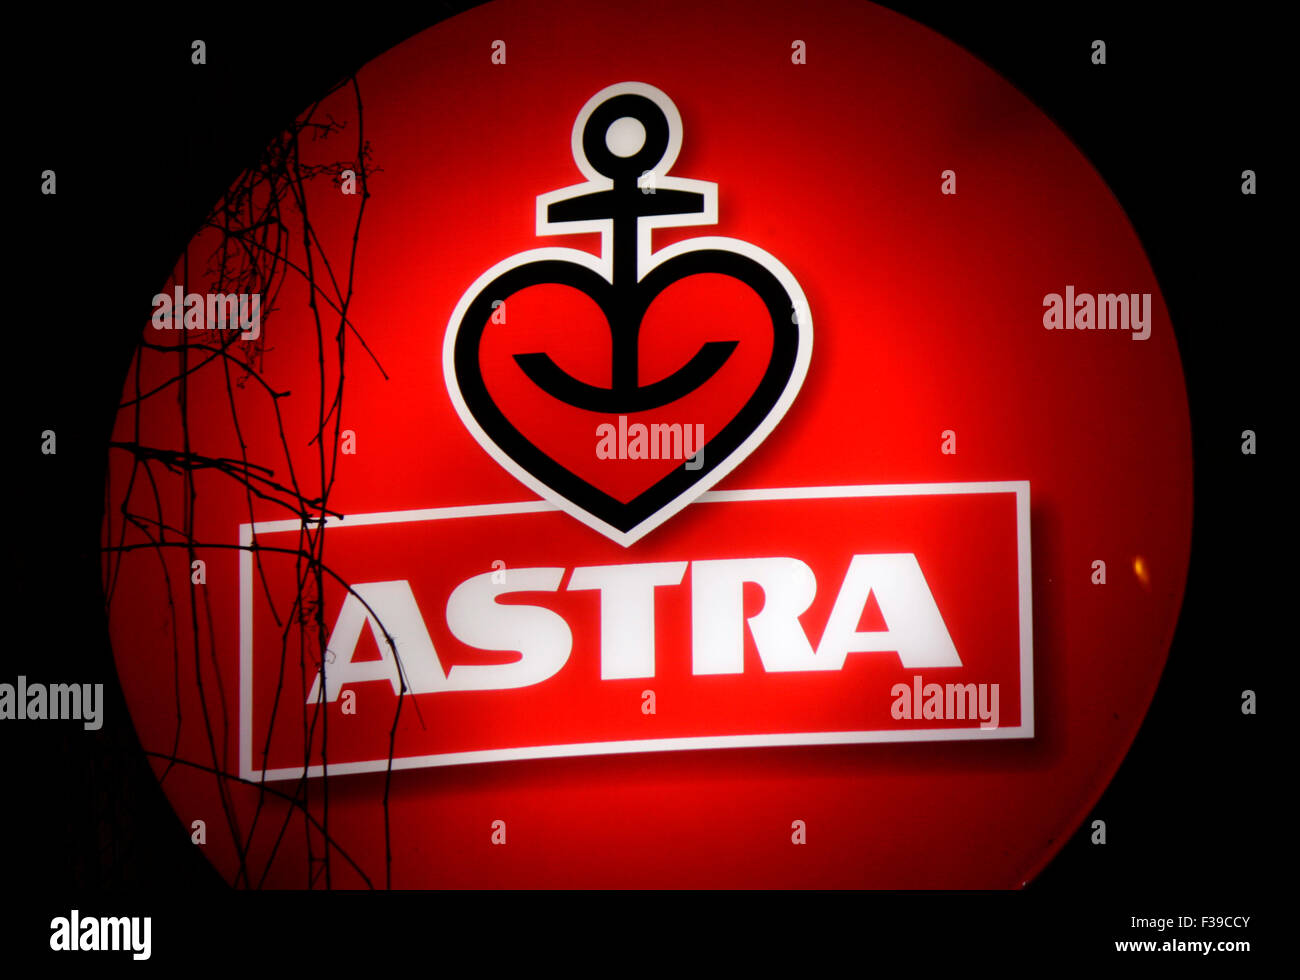 Astra bier beer logo -Fotos und -Bildmaterial in hoher Auflösung – Alamy